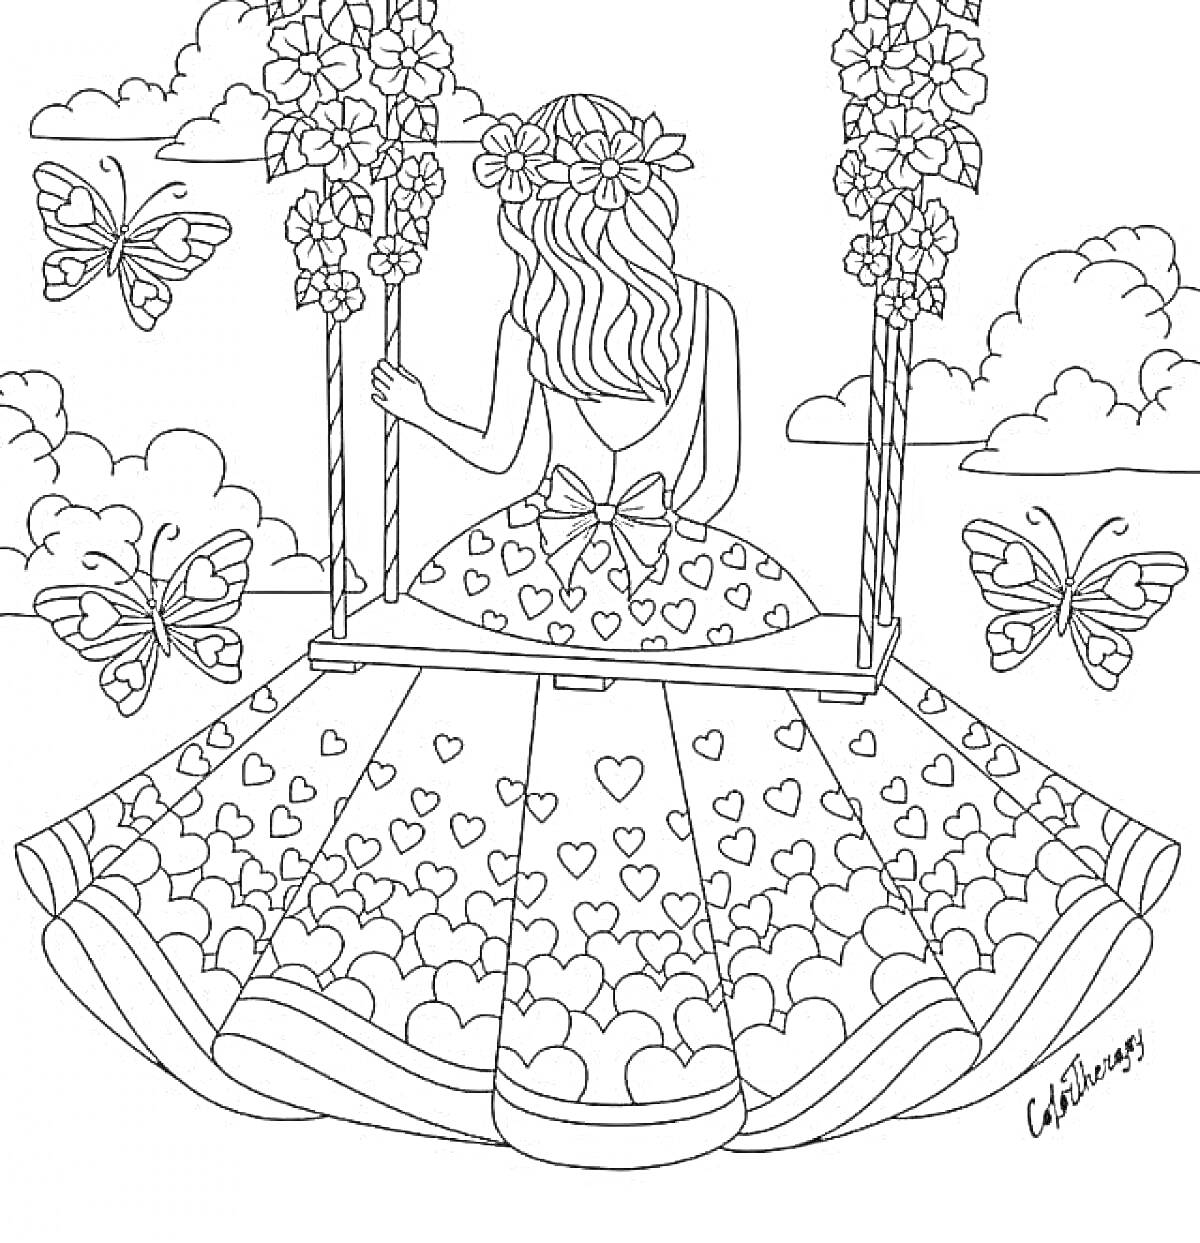 Раскраска Девушка на качелях с цветами на голове и бабочками в небе